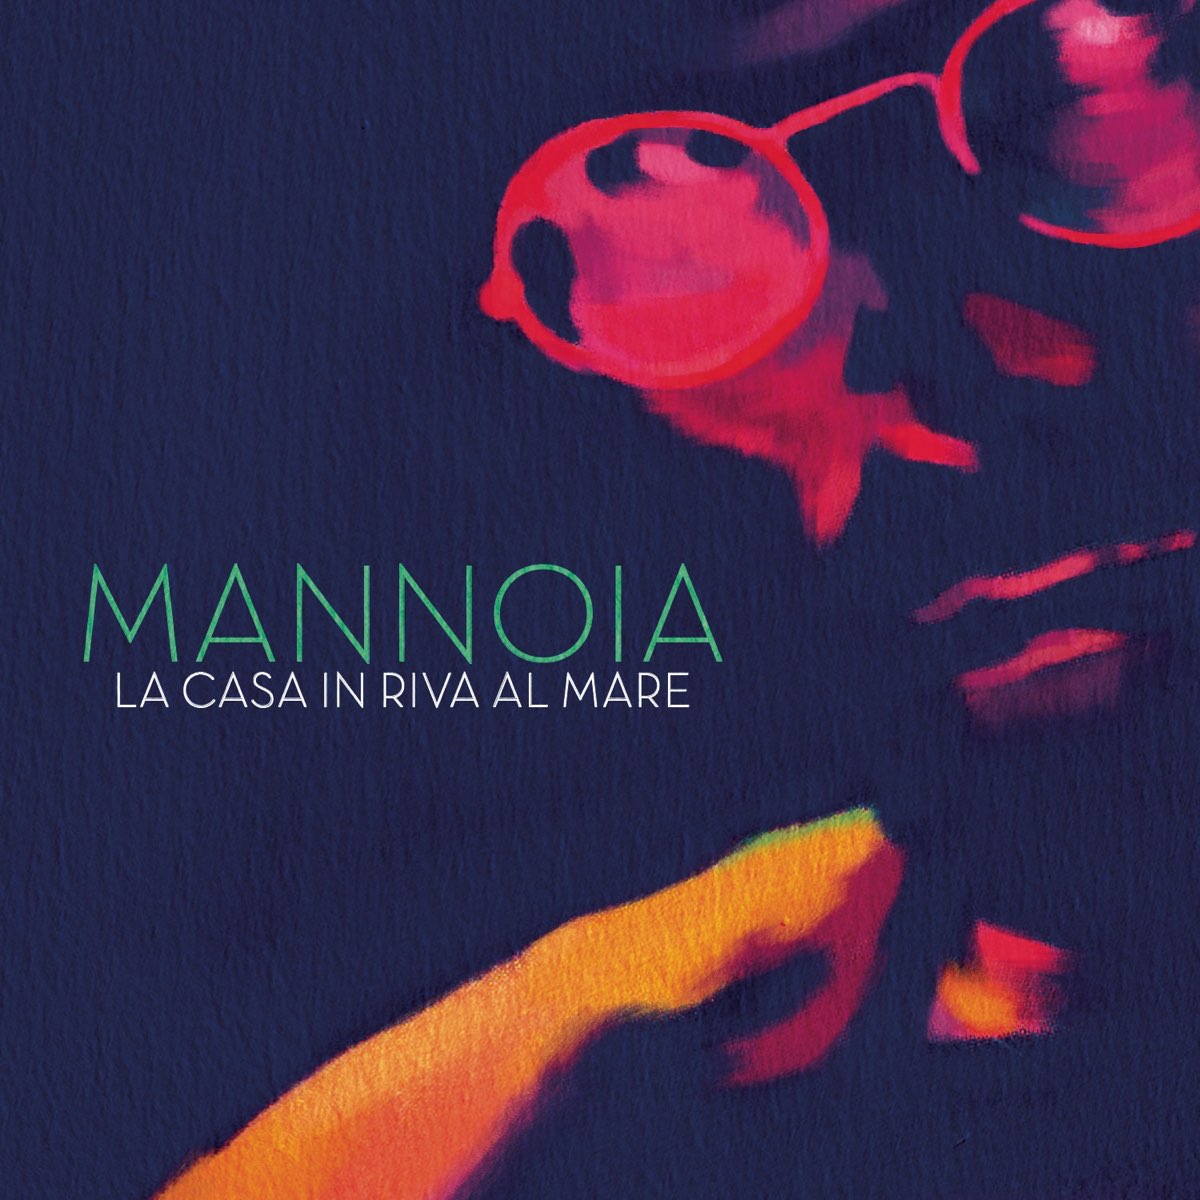 La casa in riva al mare - Single - Album by Fiorella Mannoia - Apple Music